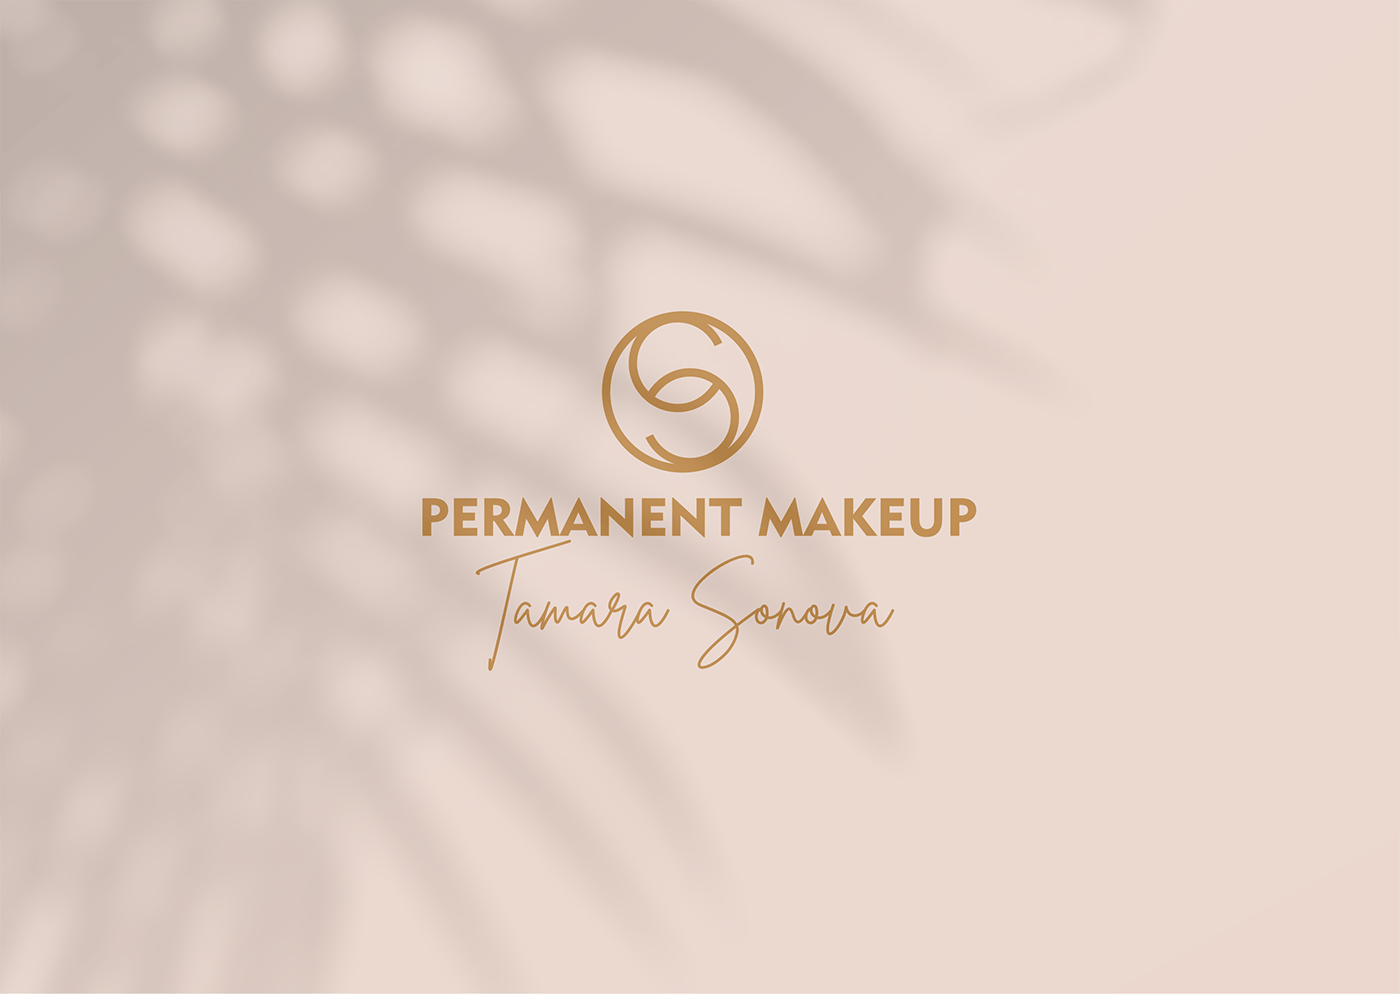 beauty design makeup Permanent Makeup логотип перманентный макияж фирменный стиль